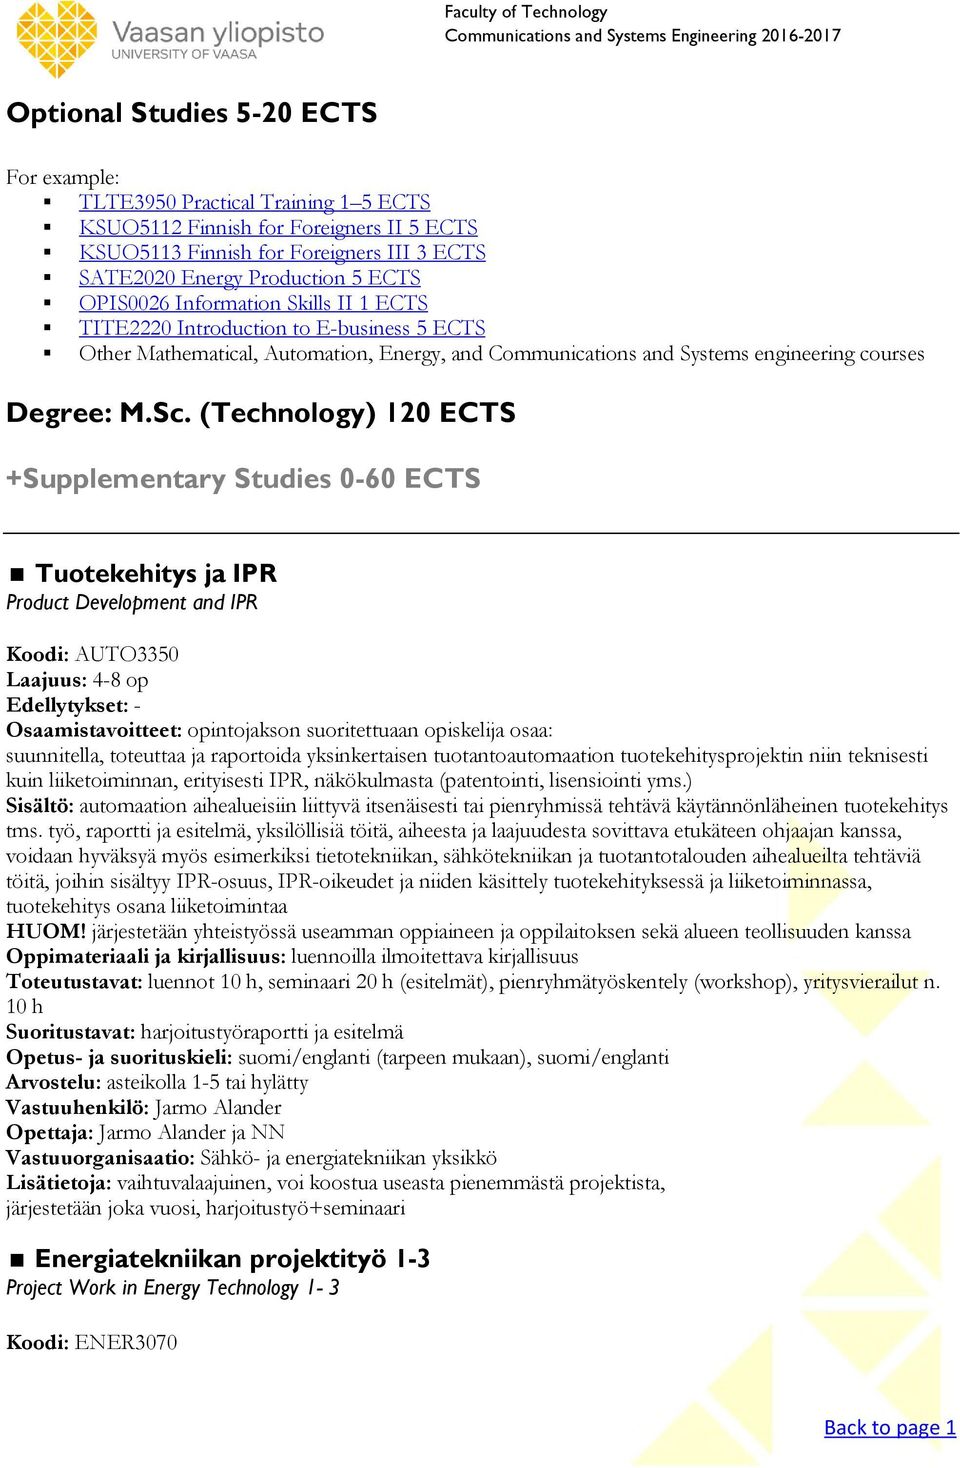 (Technology) 120 ECTS +Supplementary Studies 0-60 ECTS Tuotekehitys ja IPR Product Development and IPR Koodi: AUTO3350 Laajuus: 4-8 op Edellytykset: - Osaamistavoitteet: opintojakson suoritettuaan